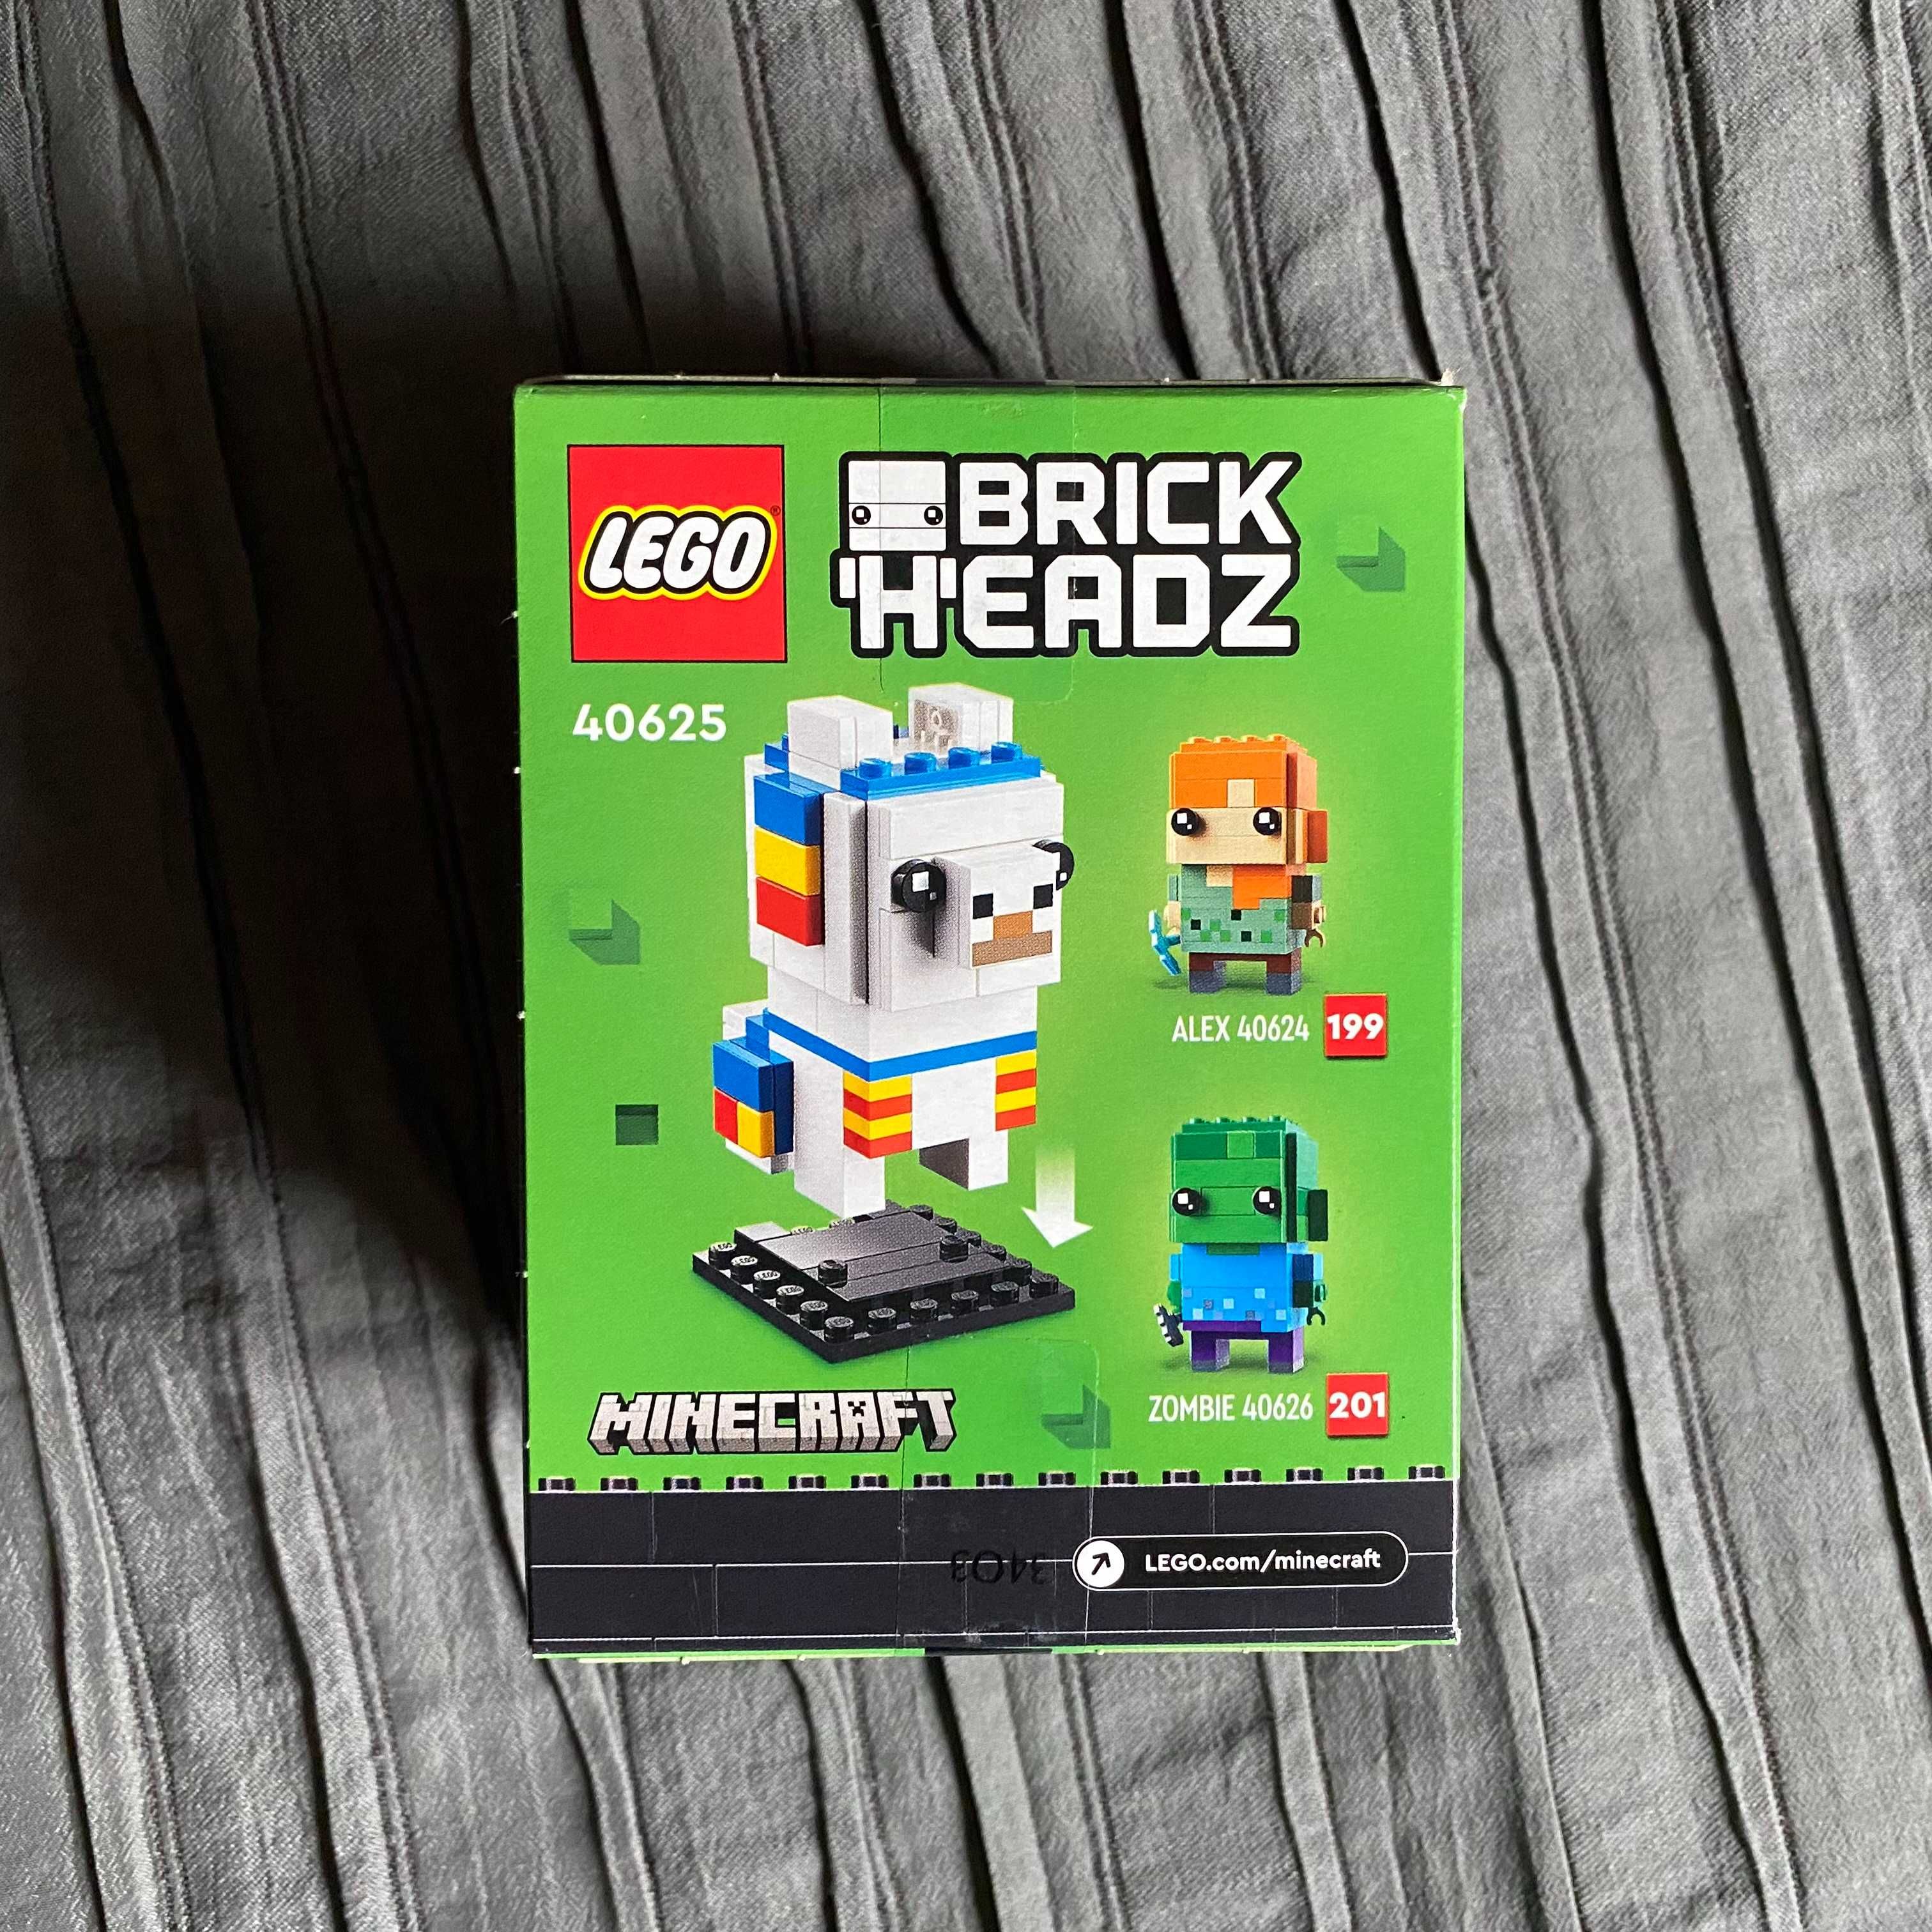 LEGO BrickHeadz 40625 - Llama